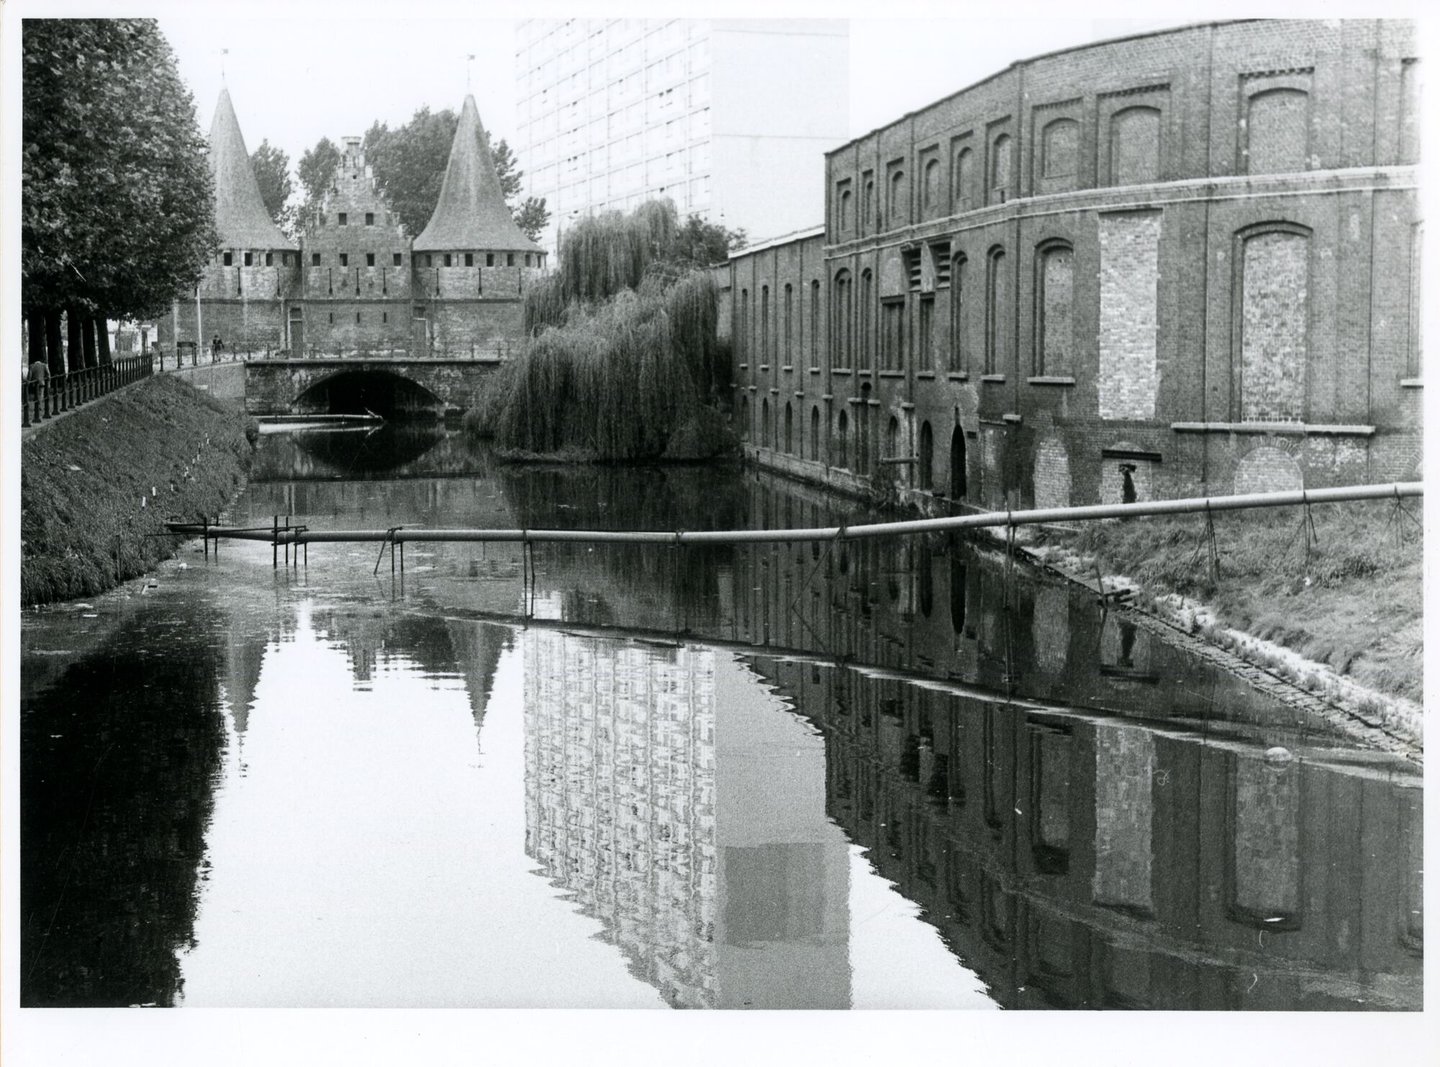 Zicht op de Lieve, het Rabot en textielfabriek UCO de Hemptinne in Gent